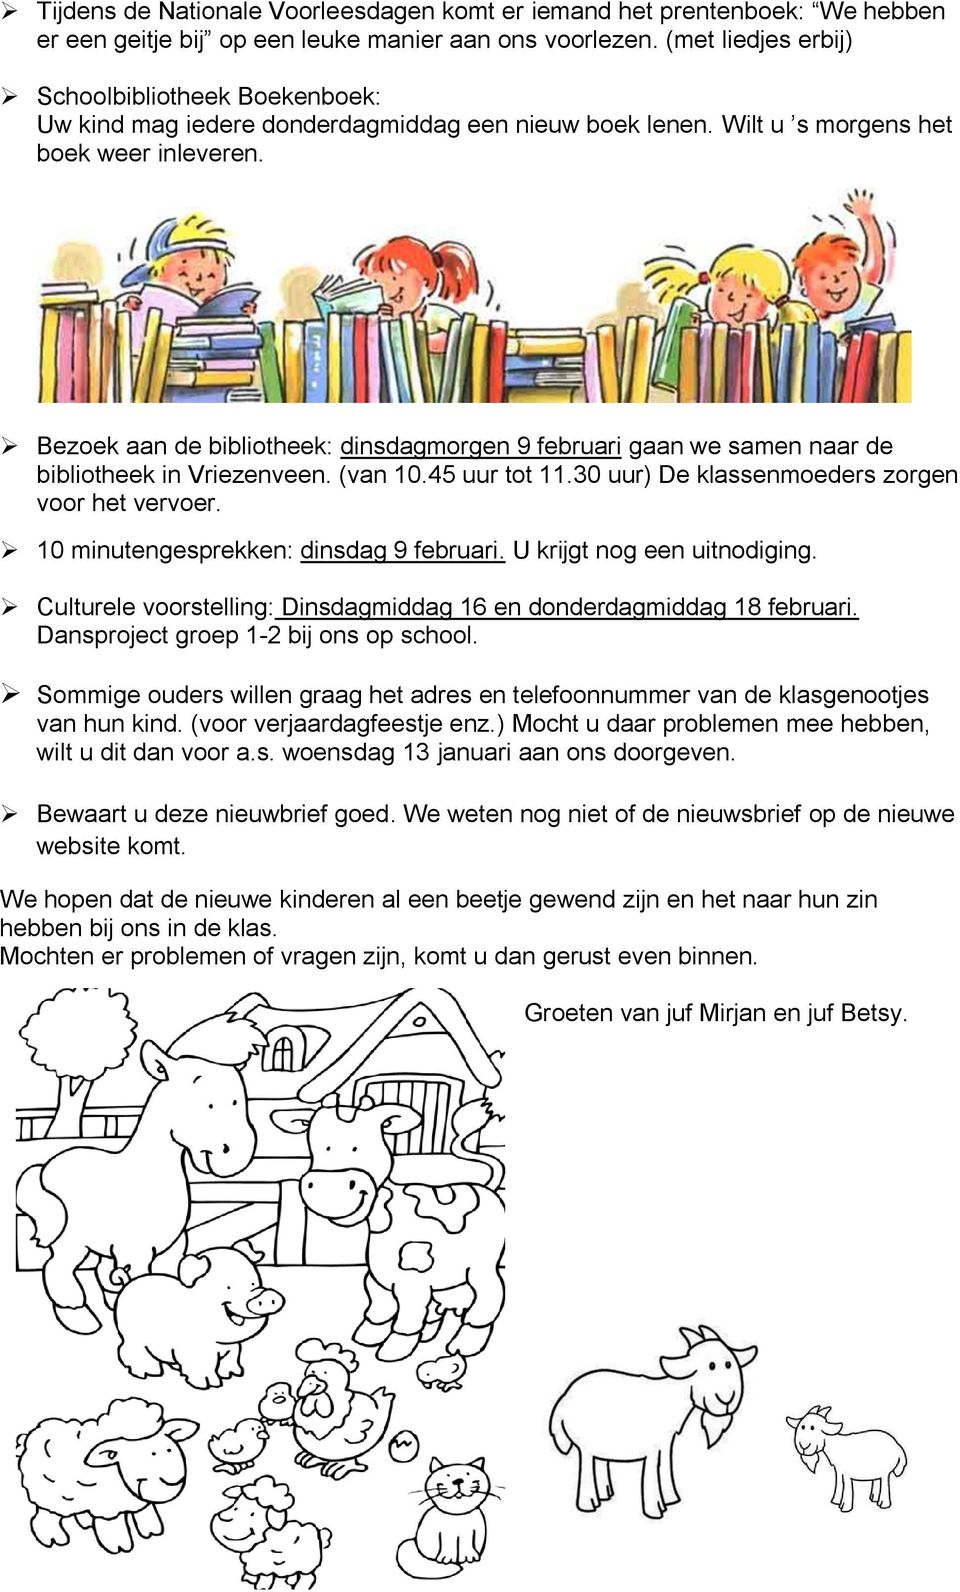 Bezoek aan de bibliotheek: dinsdagmorgen 9 februari gaan we samen naar de bibliotheek in Vriezenveen. (van 10.45 uur tot 11.30 uur) De klassenmoeders zorgen voor het vervoer.